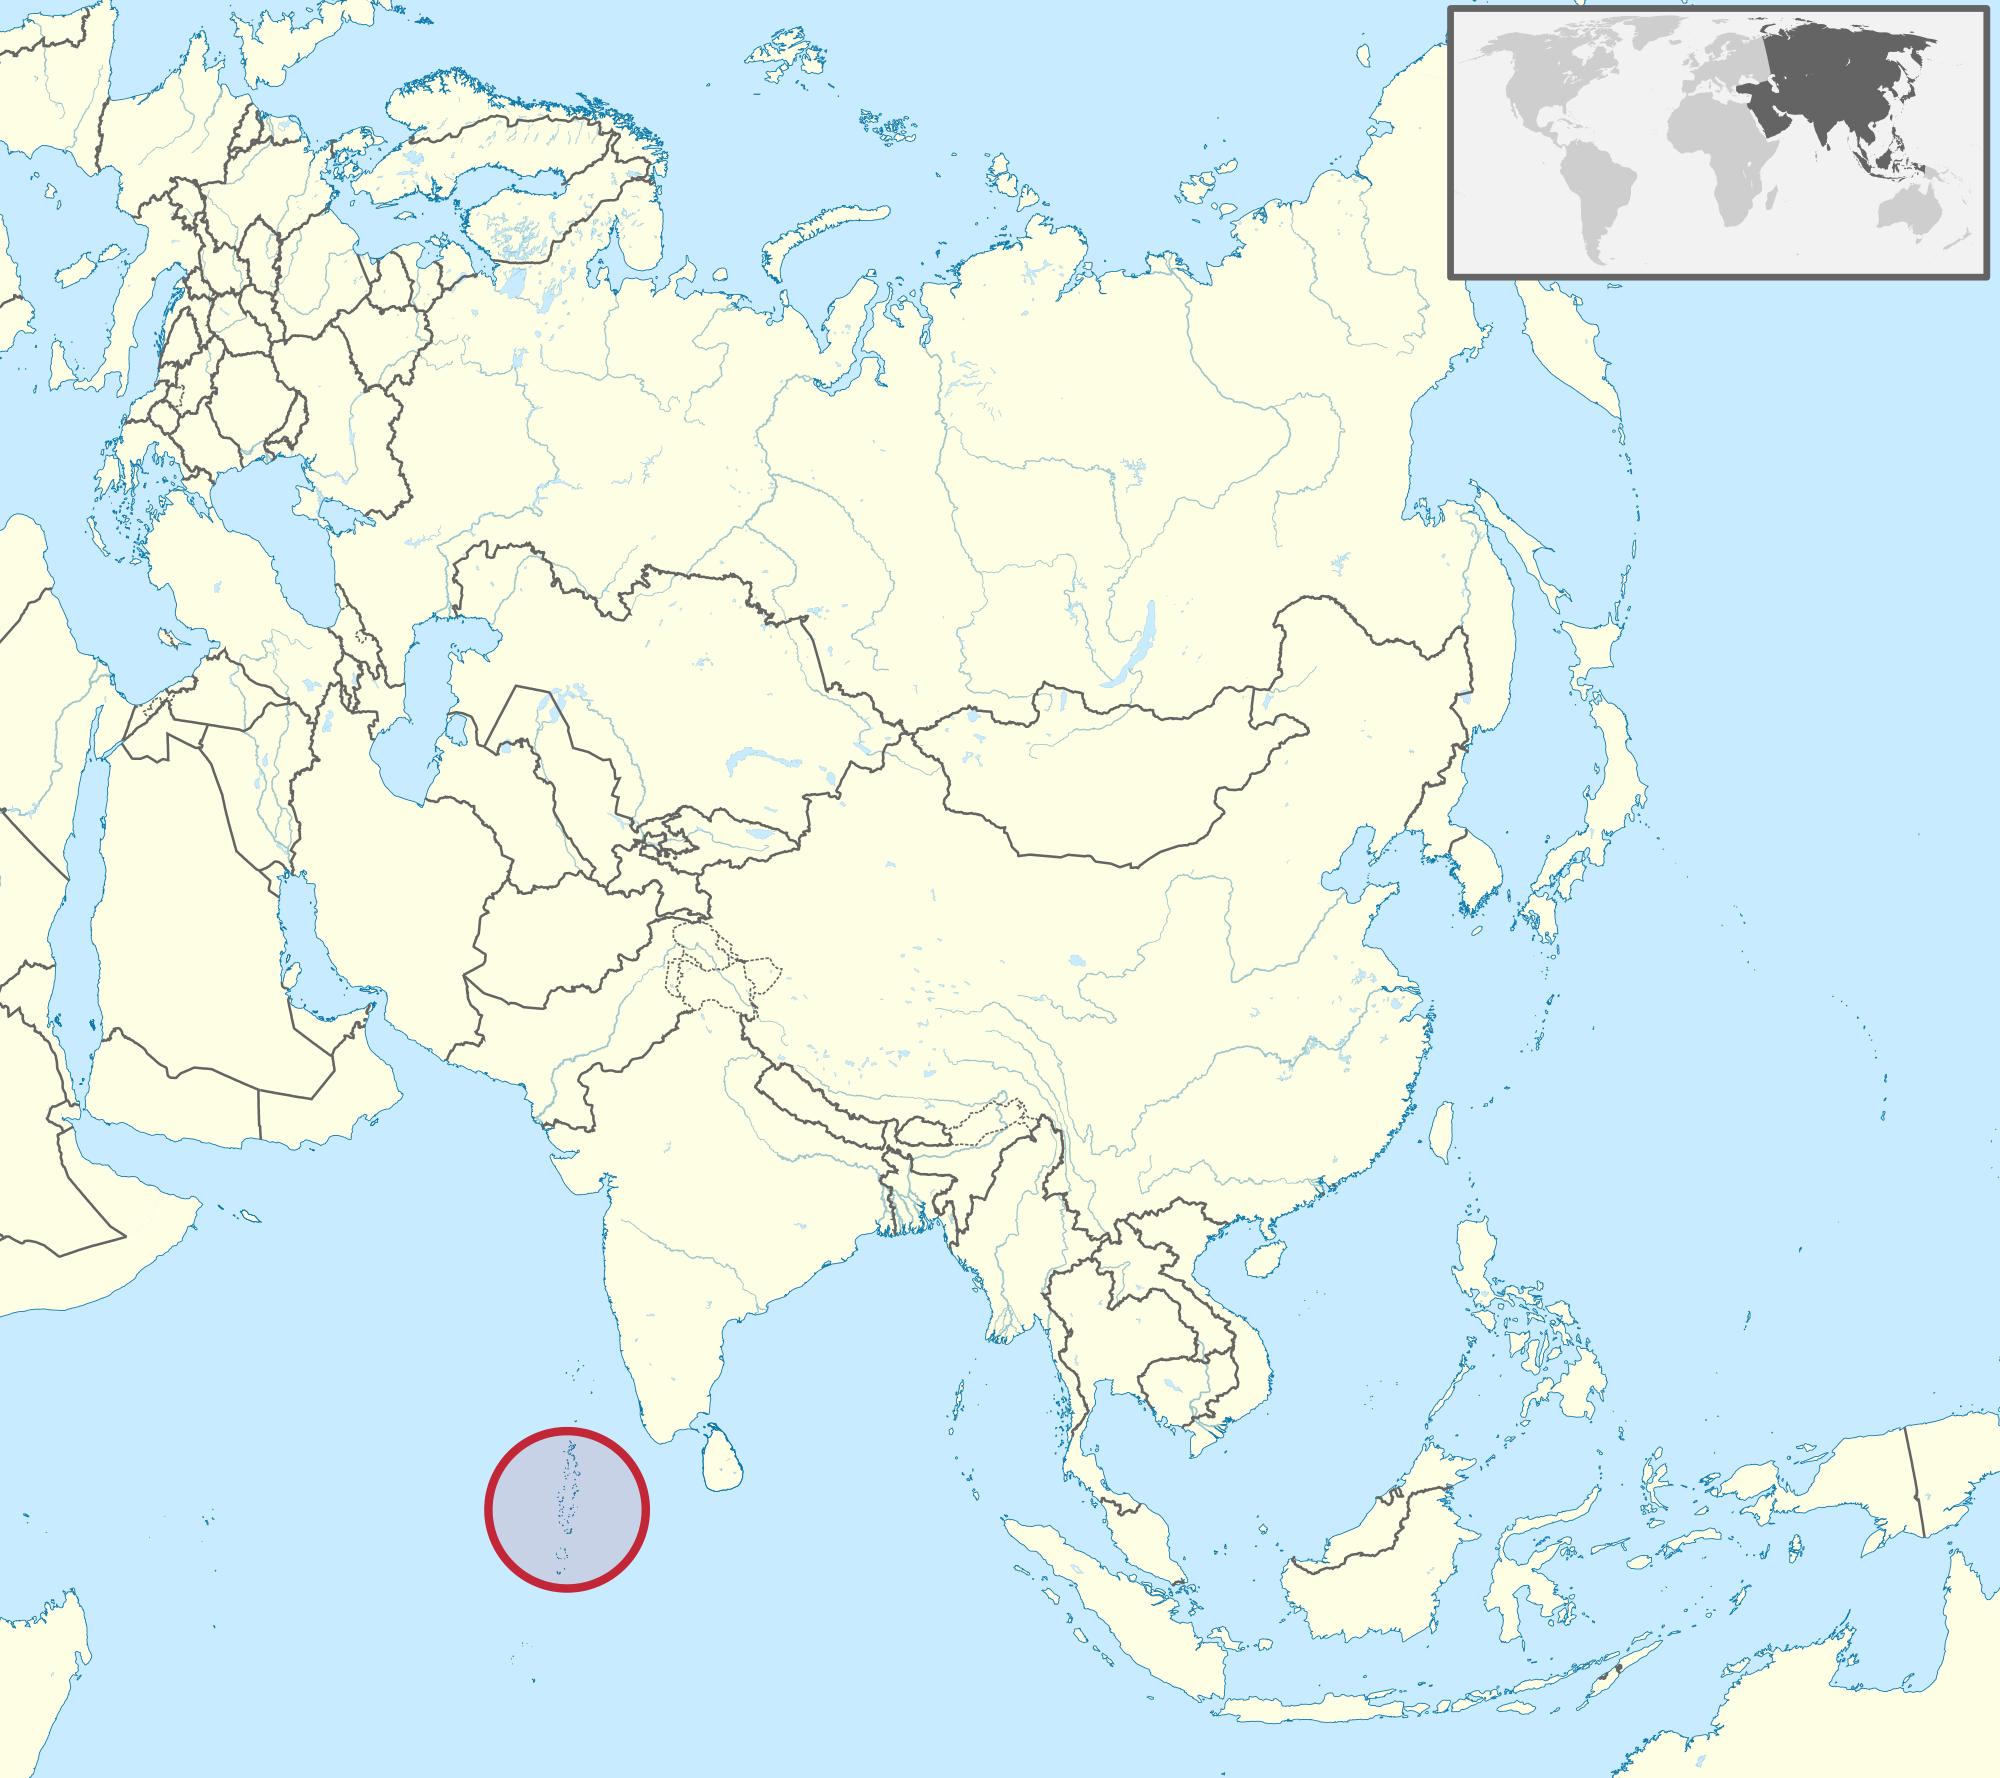 karta azije Maldivi karta Azije   karta Maldivi karta Azije (Južna Azija   Azija) karta azije